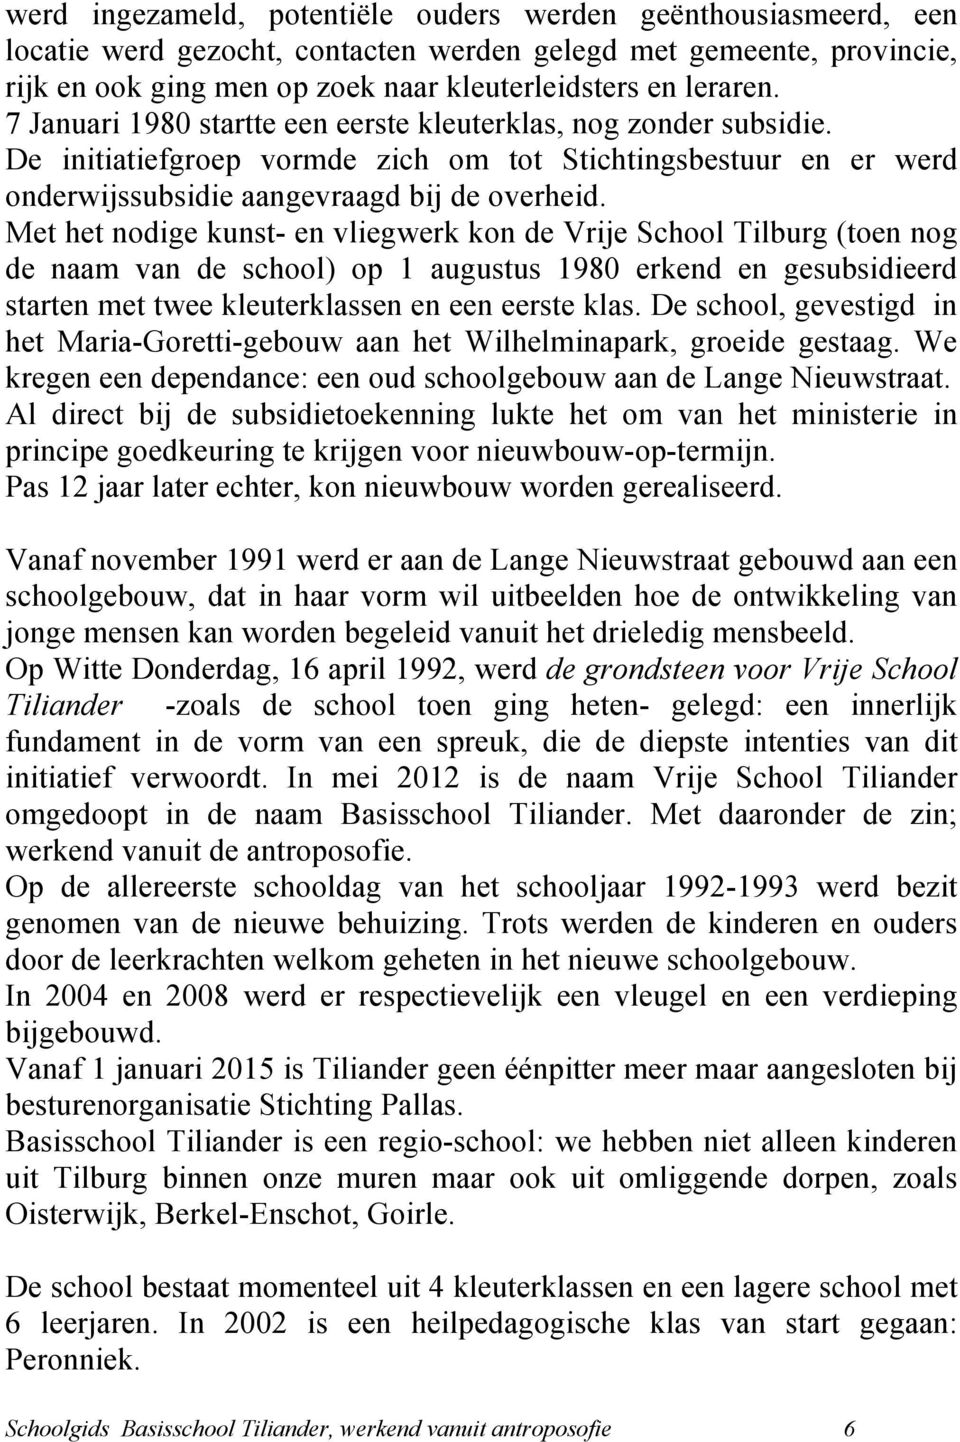 Met het nodige kunst- en vliegwerk kon de Vrije School Tilburg (toen nog de naam van de school) op 1 augustus 1980 erkend en gesubsidieerd starten met twee kleuterklassen en een eerste klas.